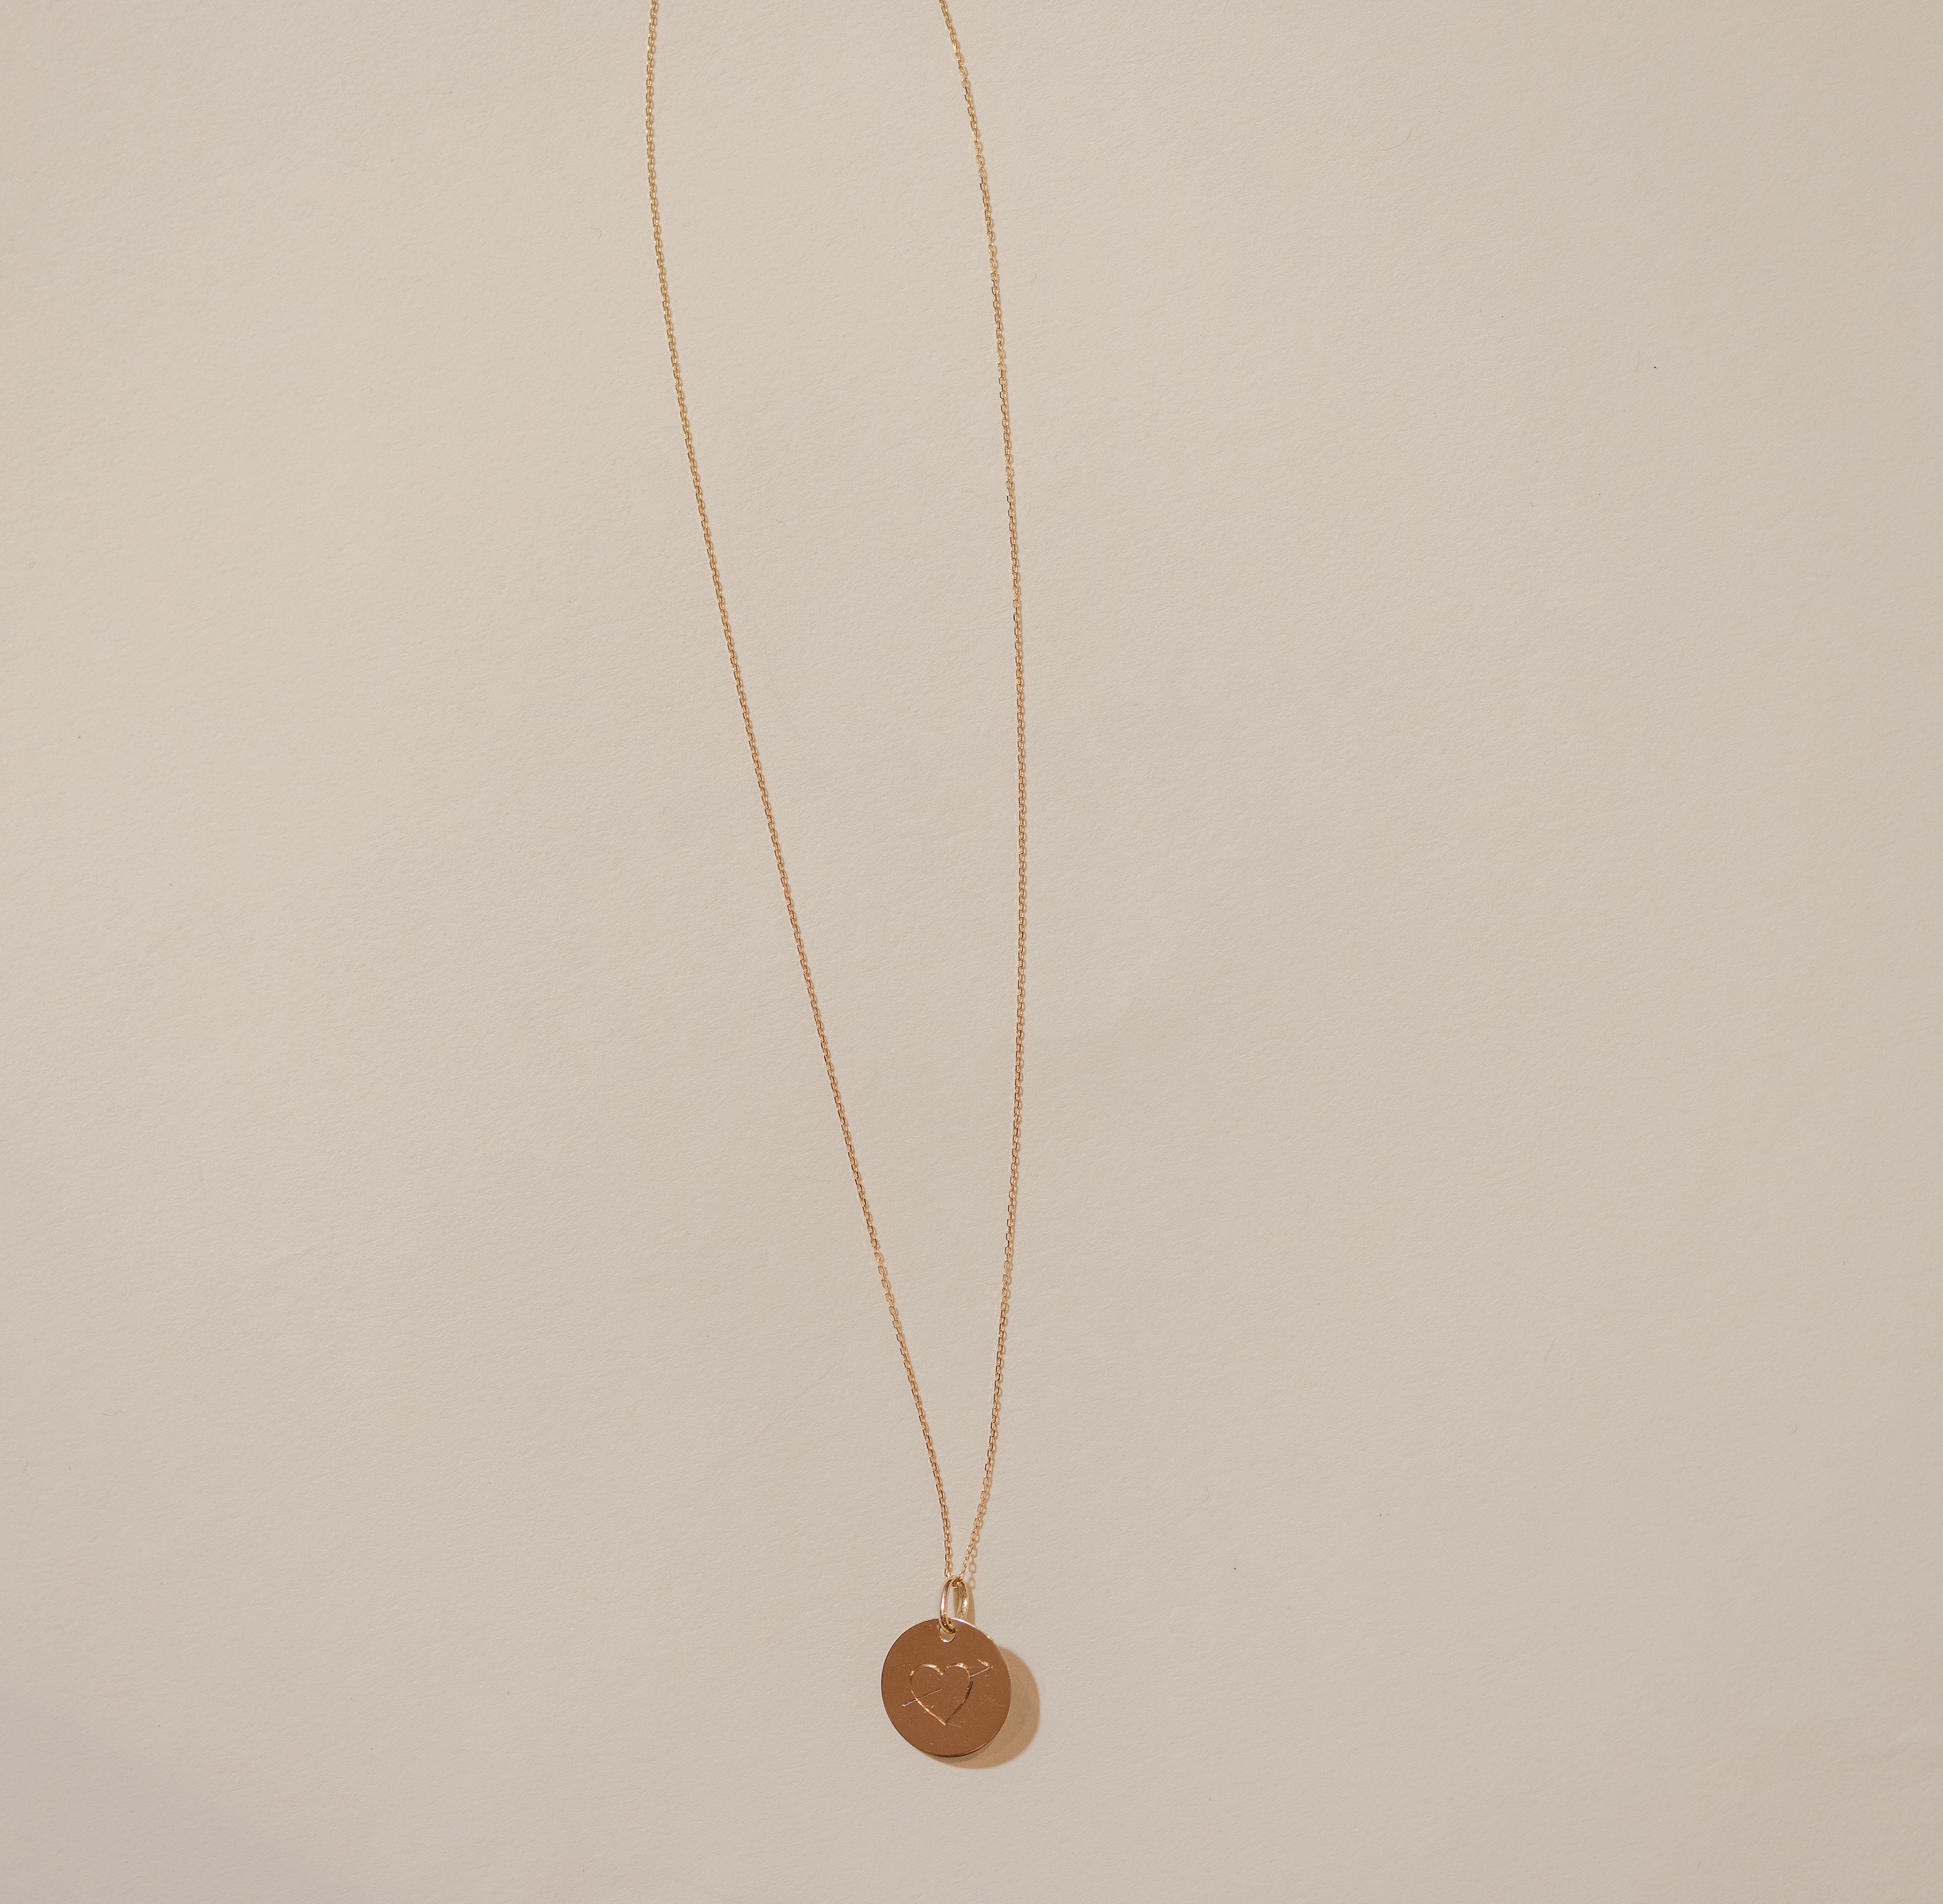 Customizable arrowed heart necklace